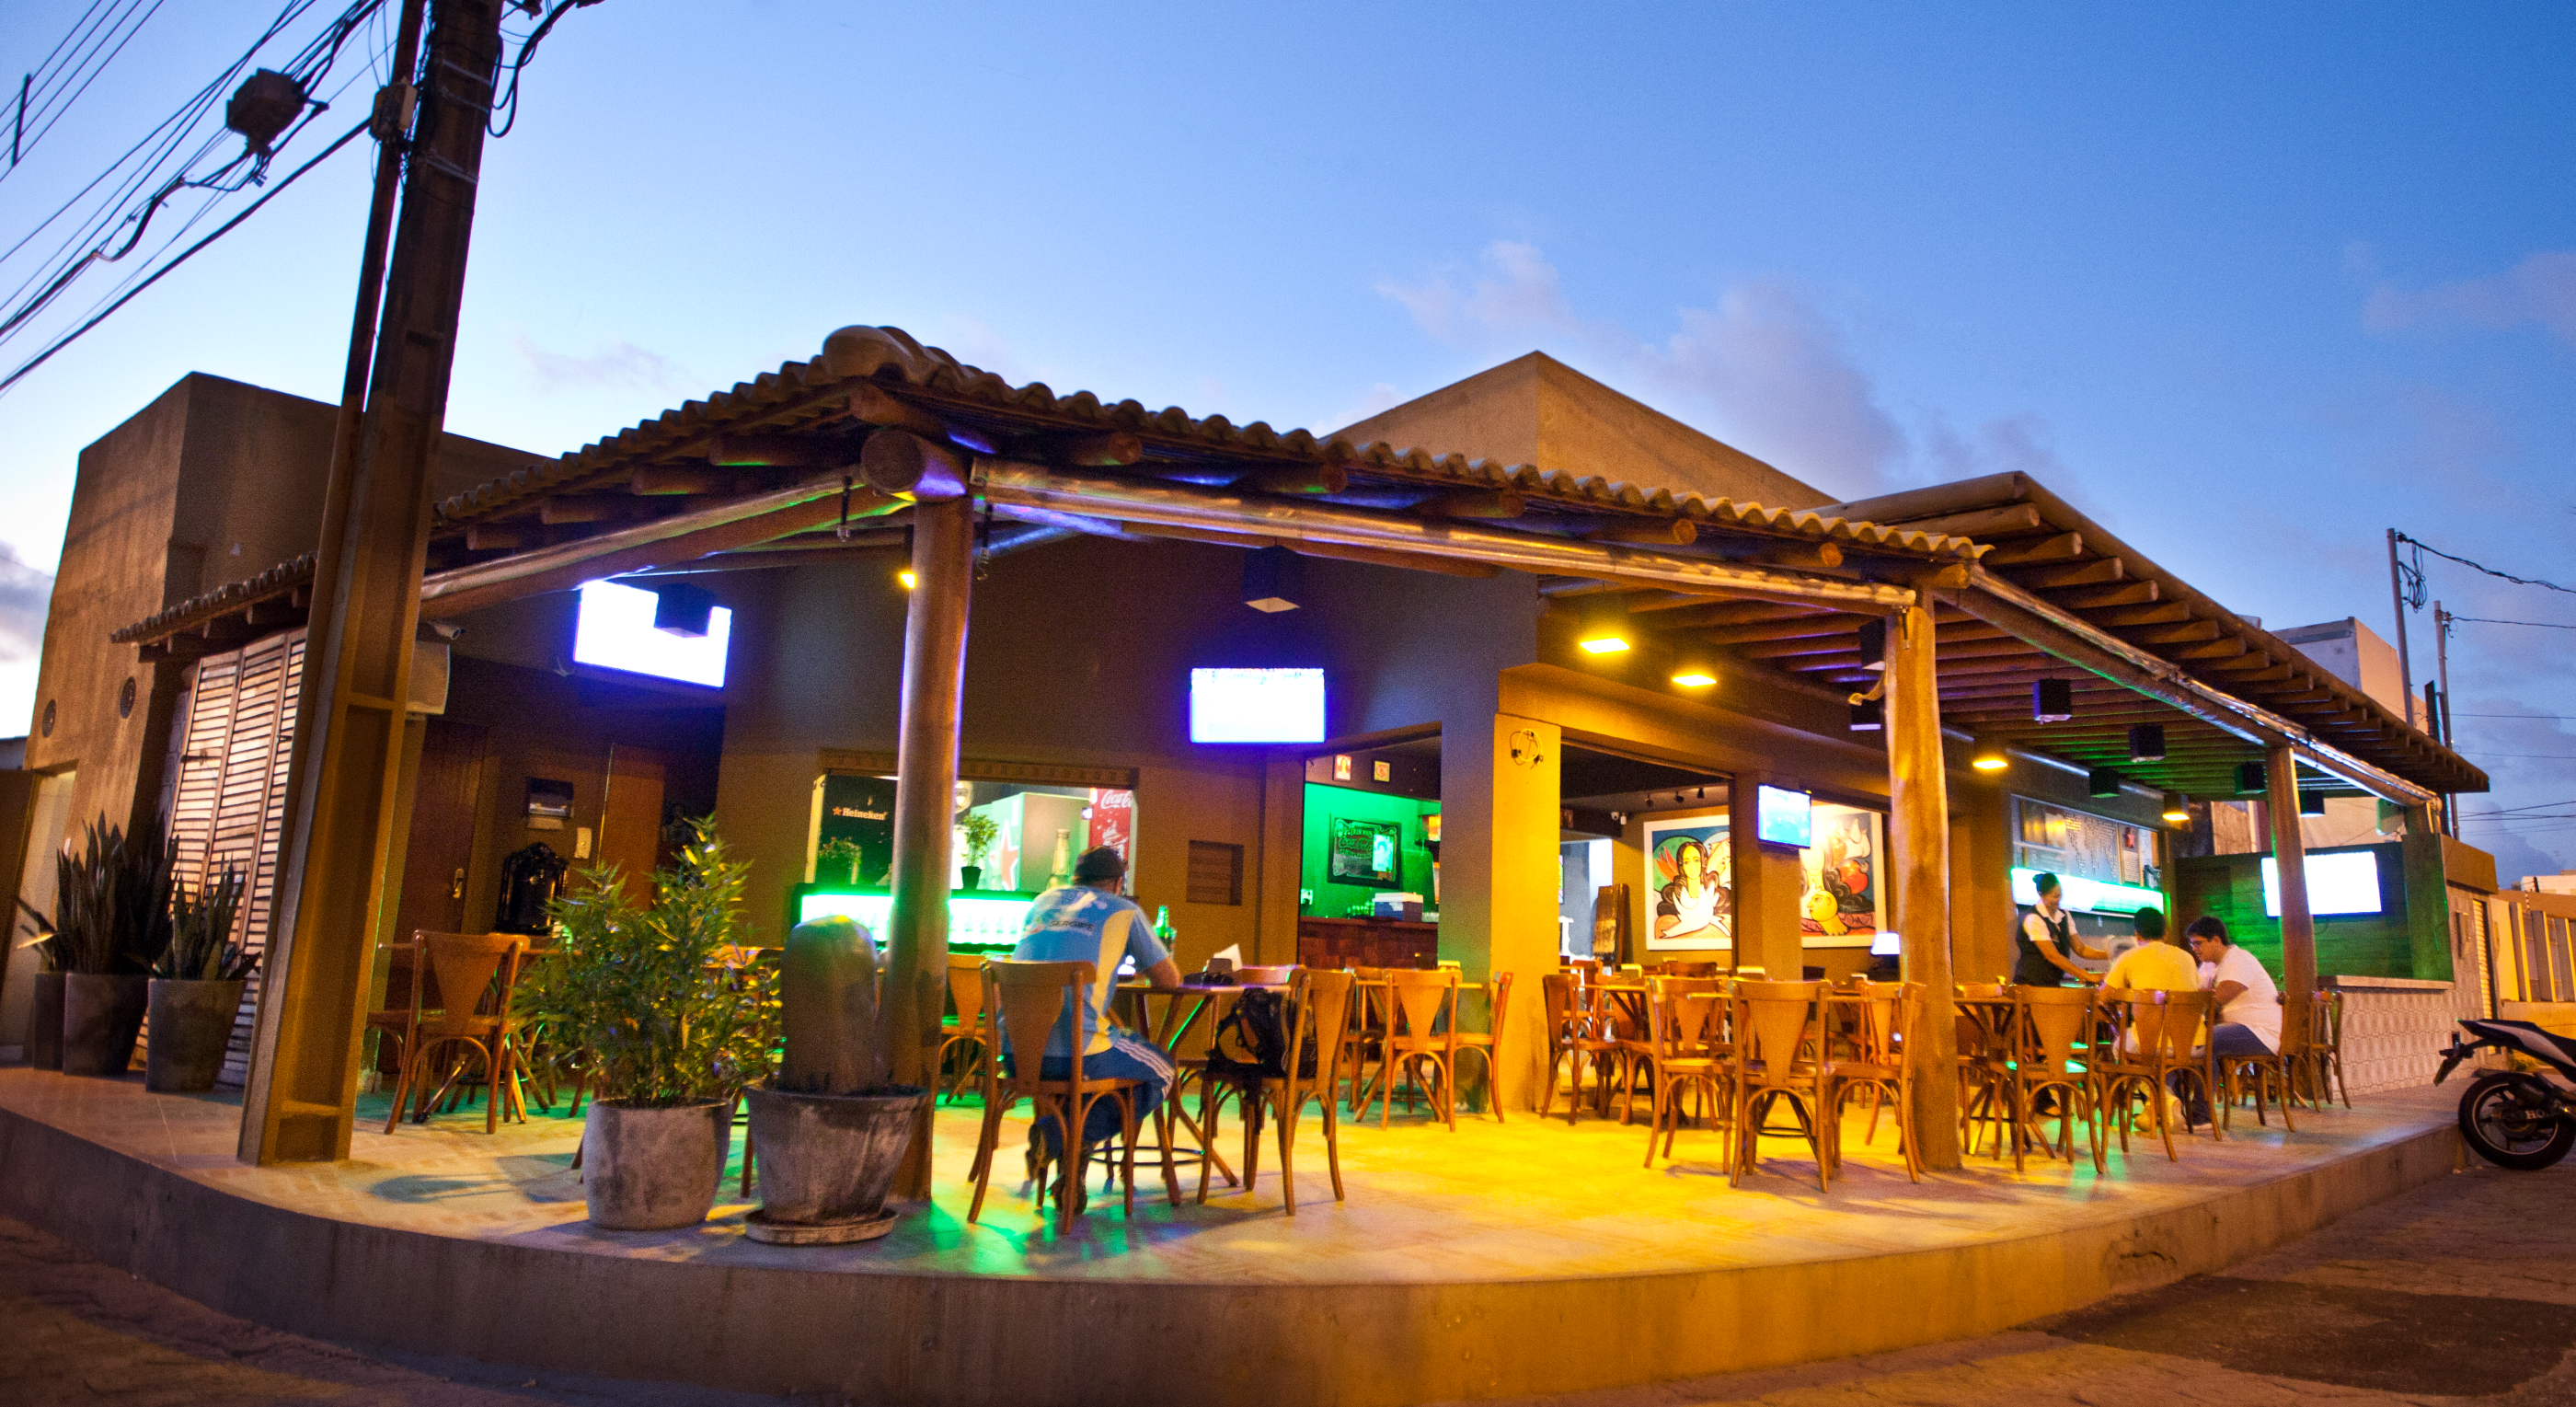 Bares em Aracaju, Aracaju, fotos de Aracaju, restaurantes em Aracaju, Sergipe, Márcio Dantas, Lugar Perfeito